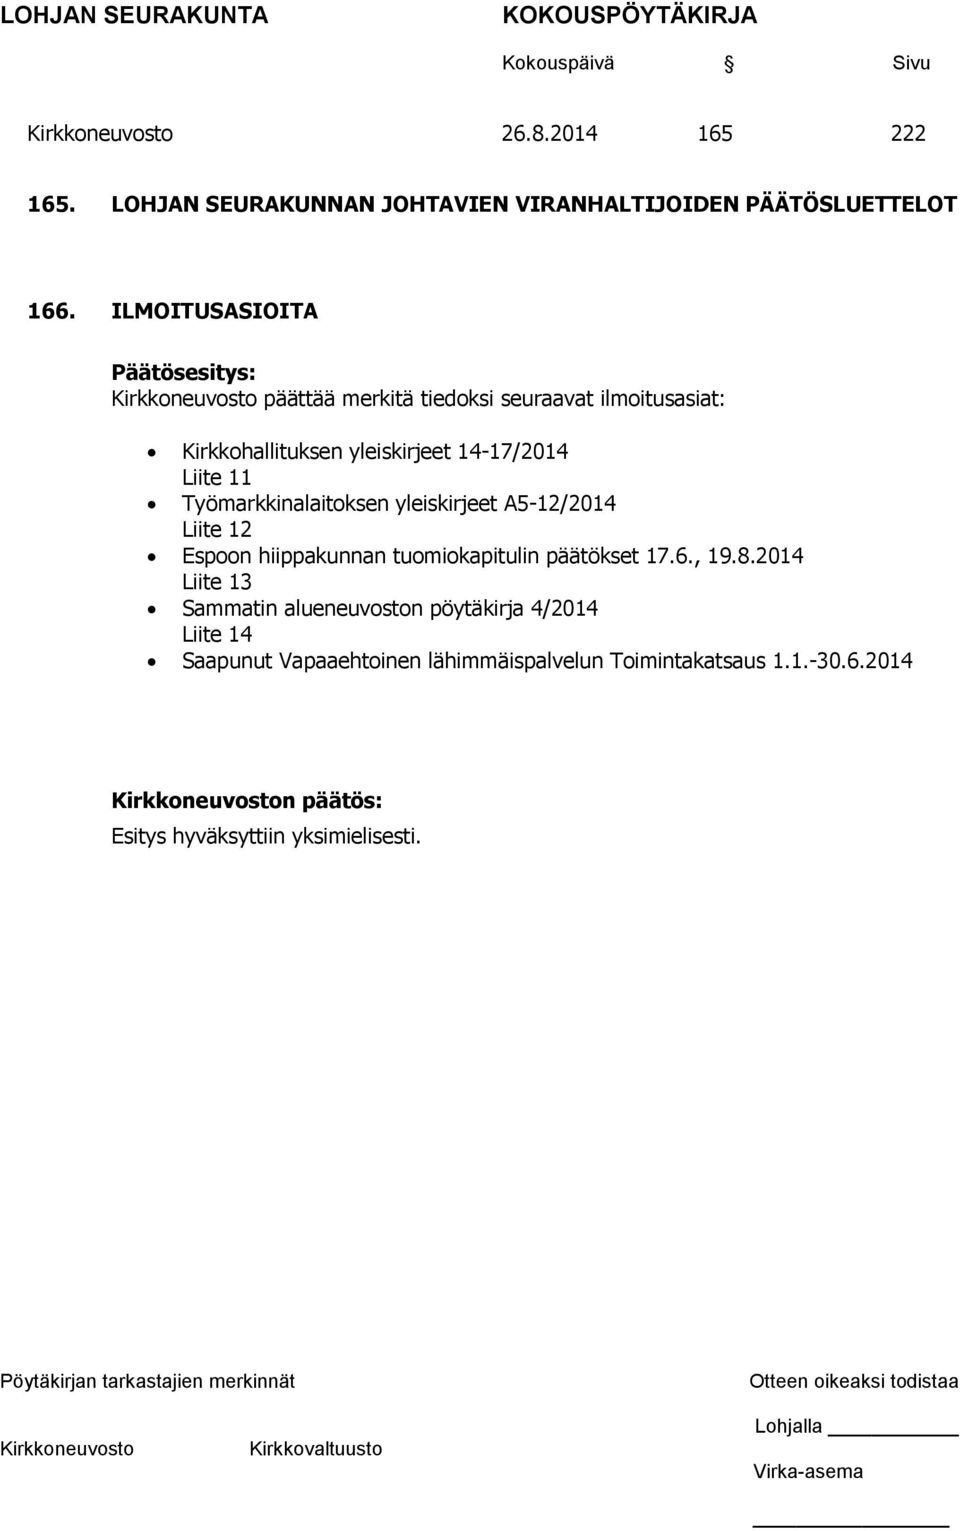 11 Työmarkkinalaitoksen yleiskirjeet A5-12/2014 Liite 12 Espoon hiippakunnan tuomiokapitulin päätökset 17.6., 19.8.